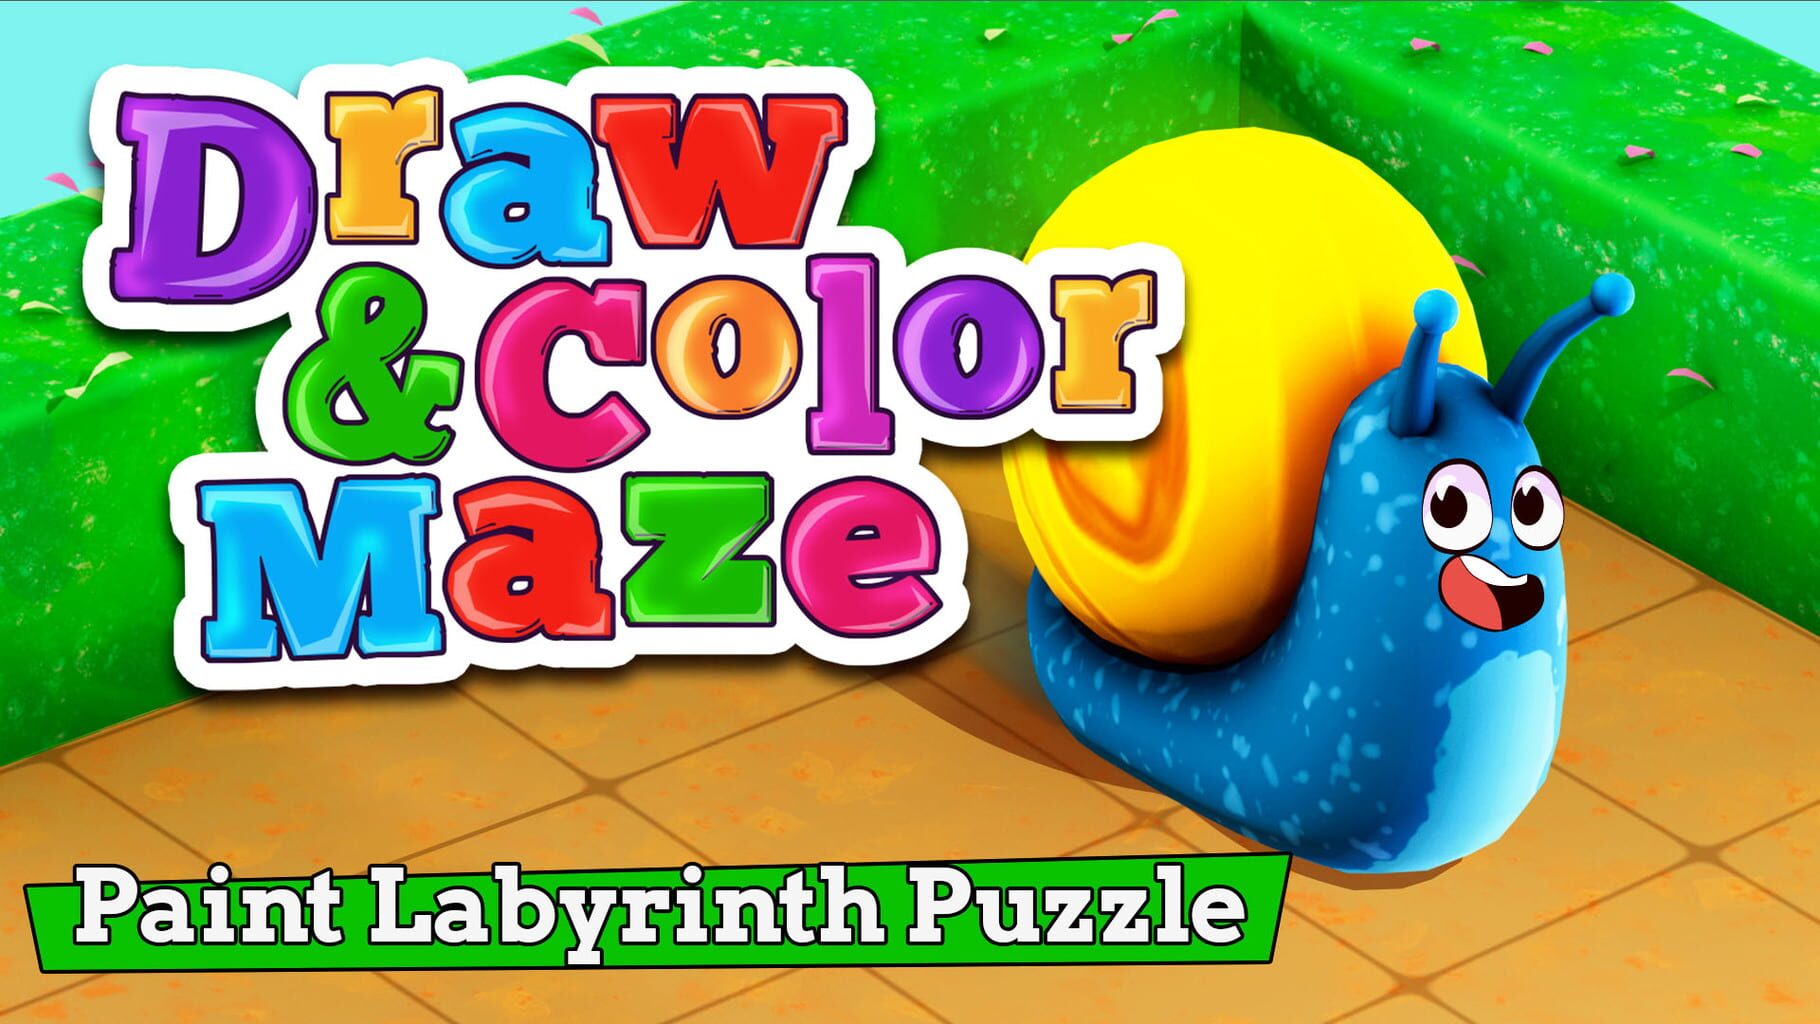 Draw & Color Maze: Paint Labyrinth Puzzle artwork